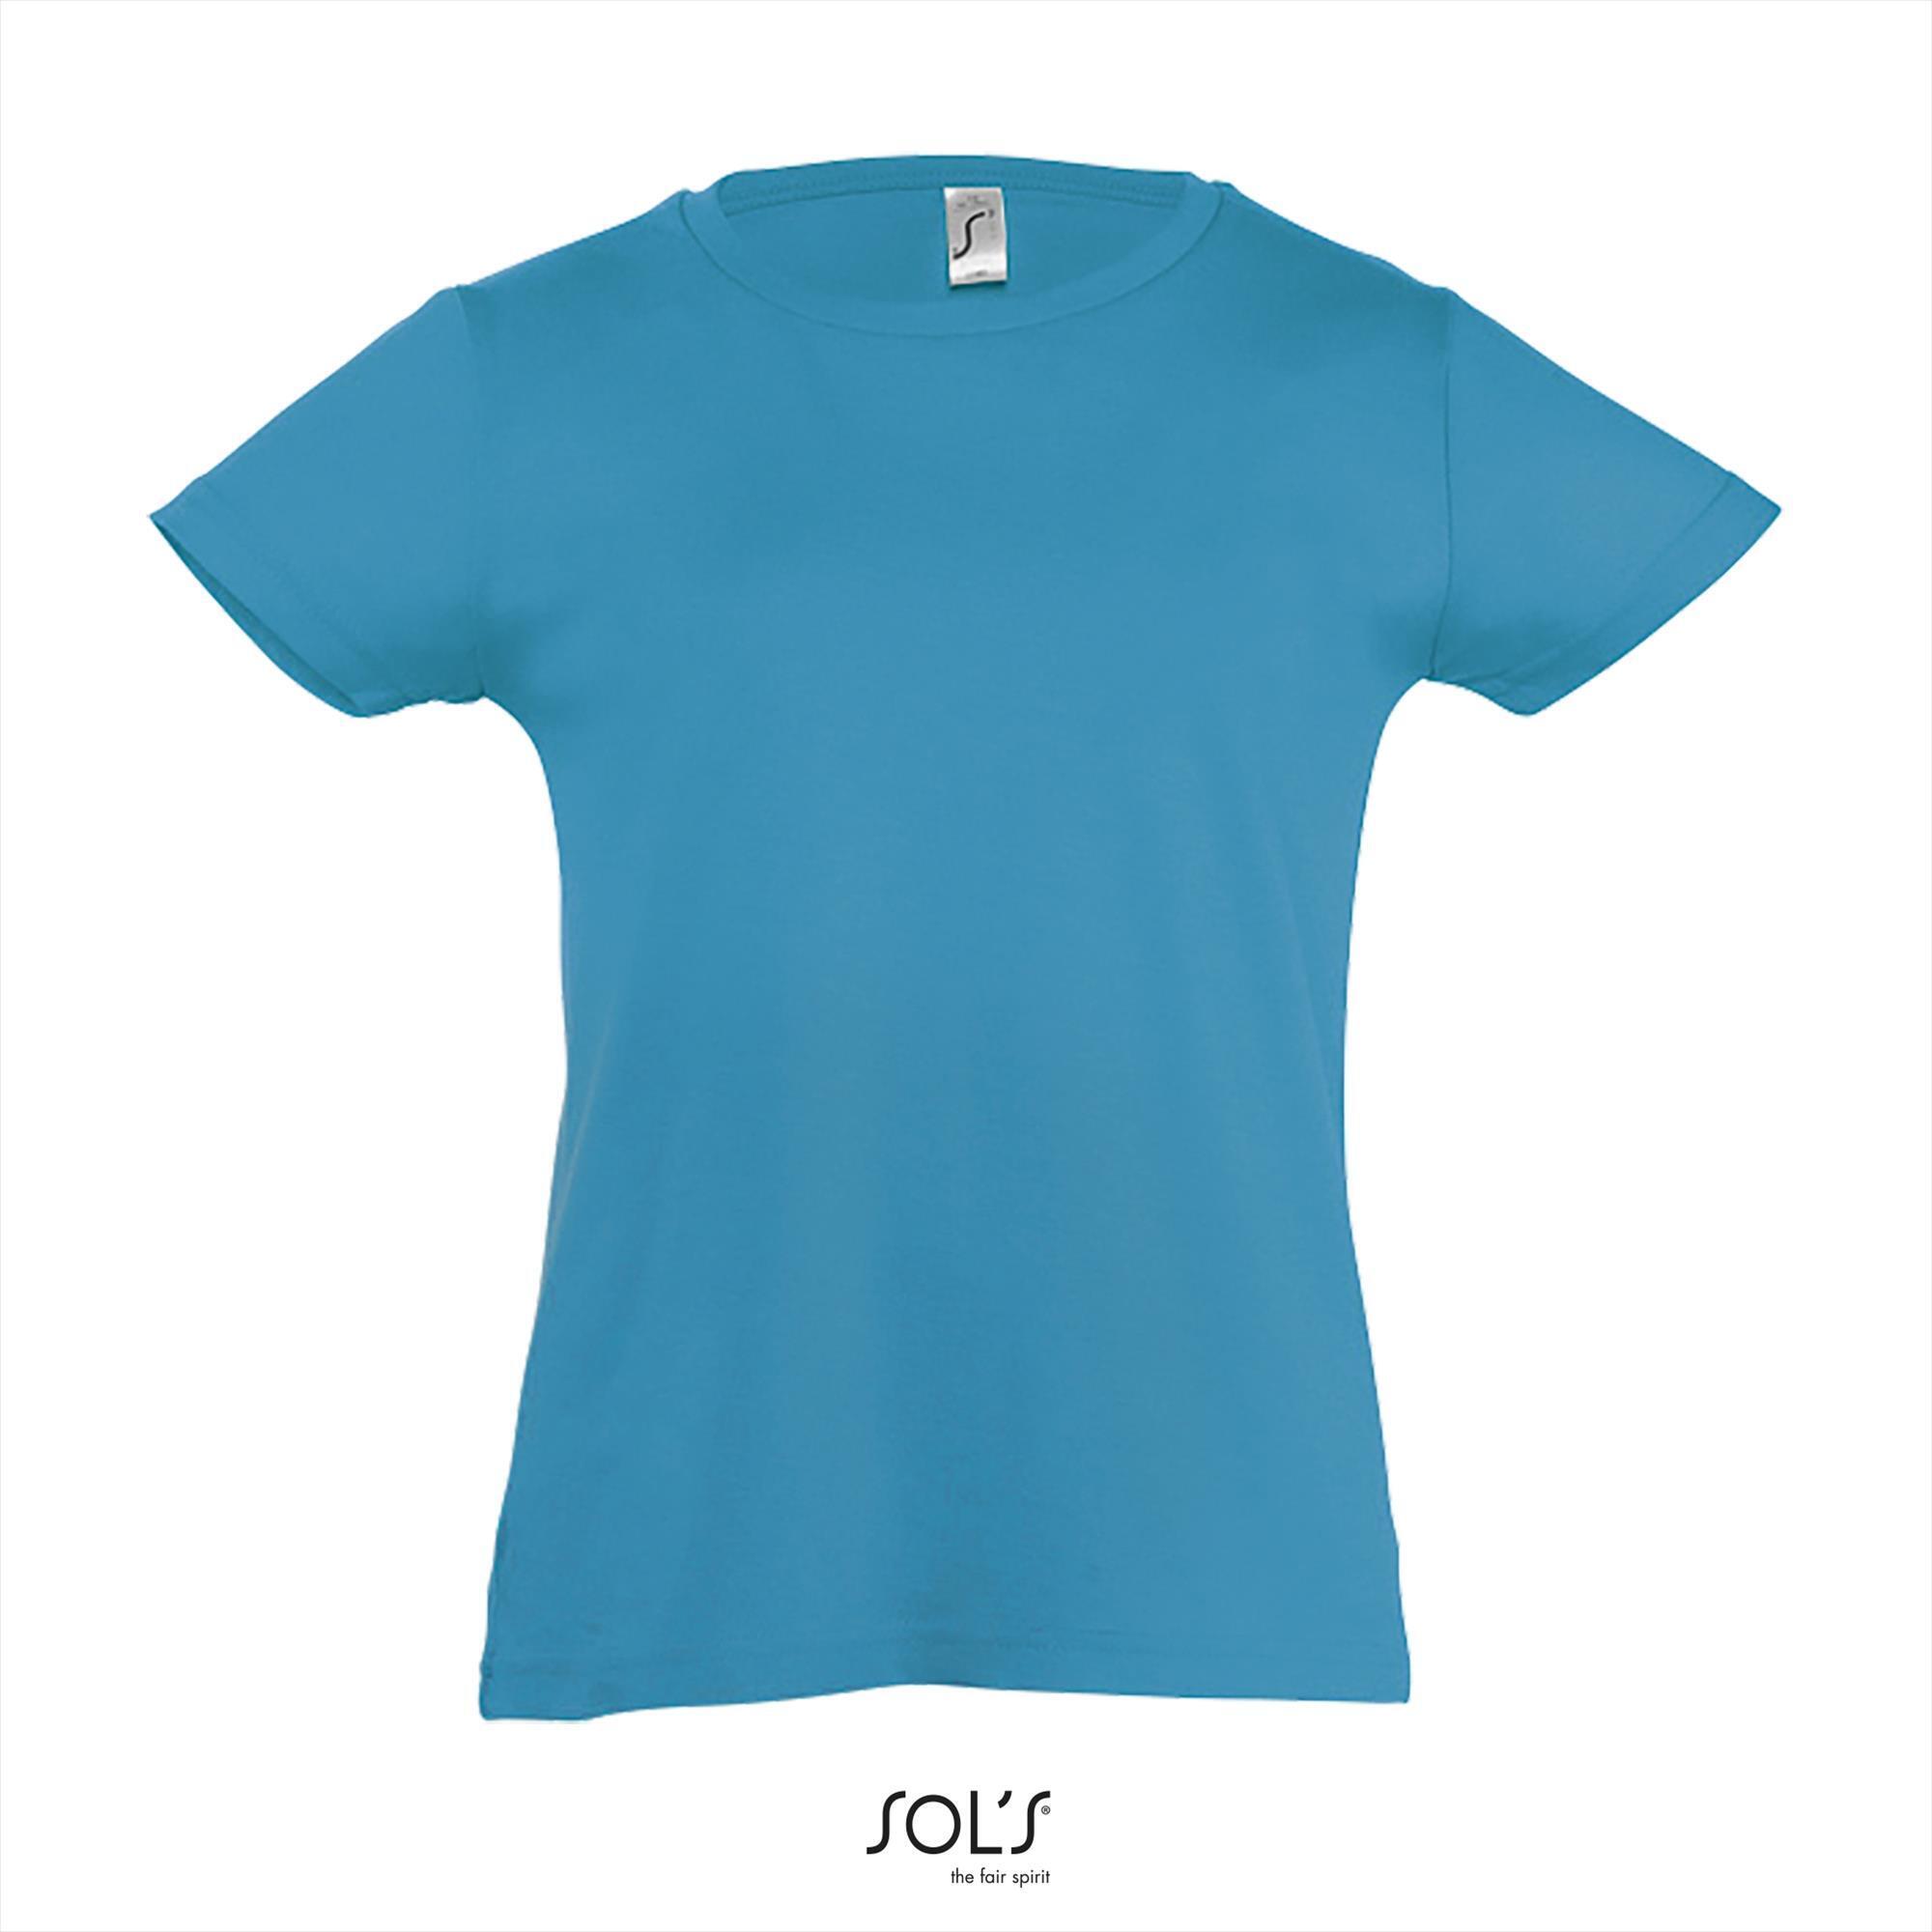 T-shirt voor meisjes aqua blauw ronde hals